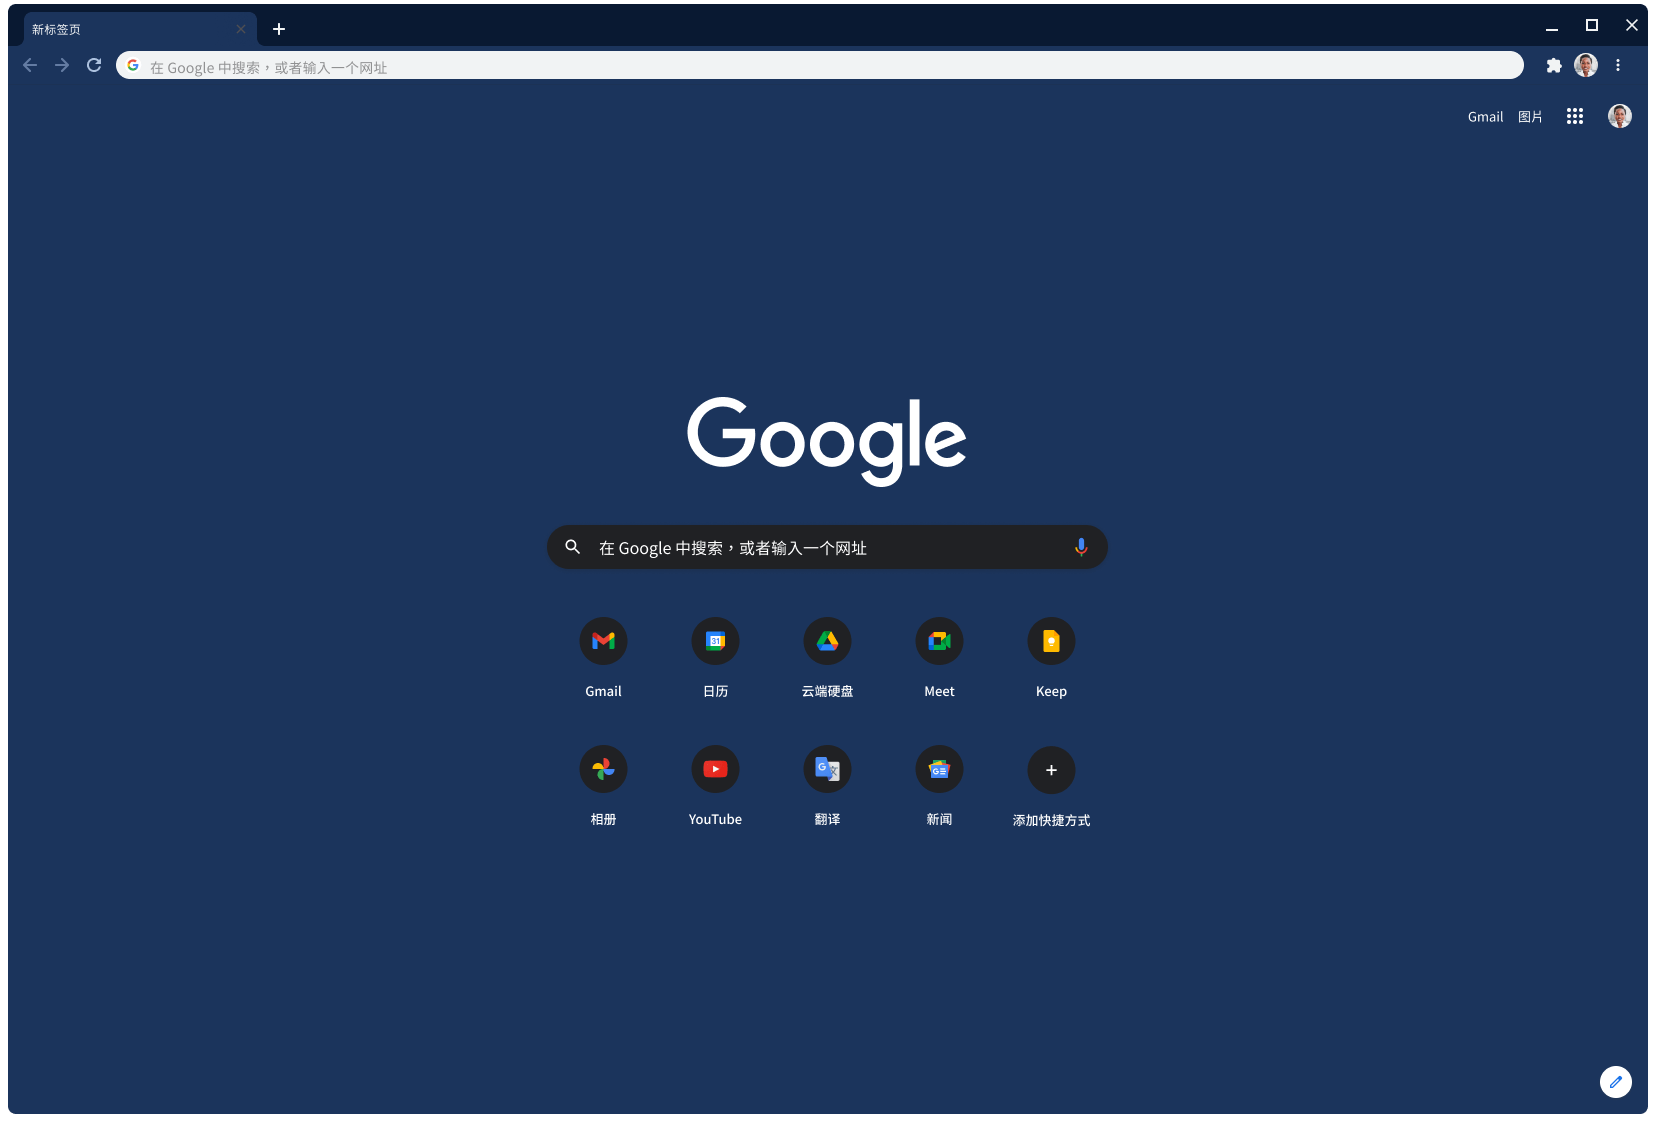 使用石版灰主题显示 Google.com 页面的 Chrome 浏览器窗口。